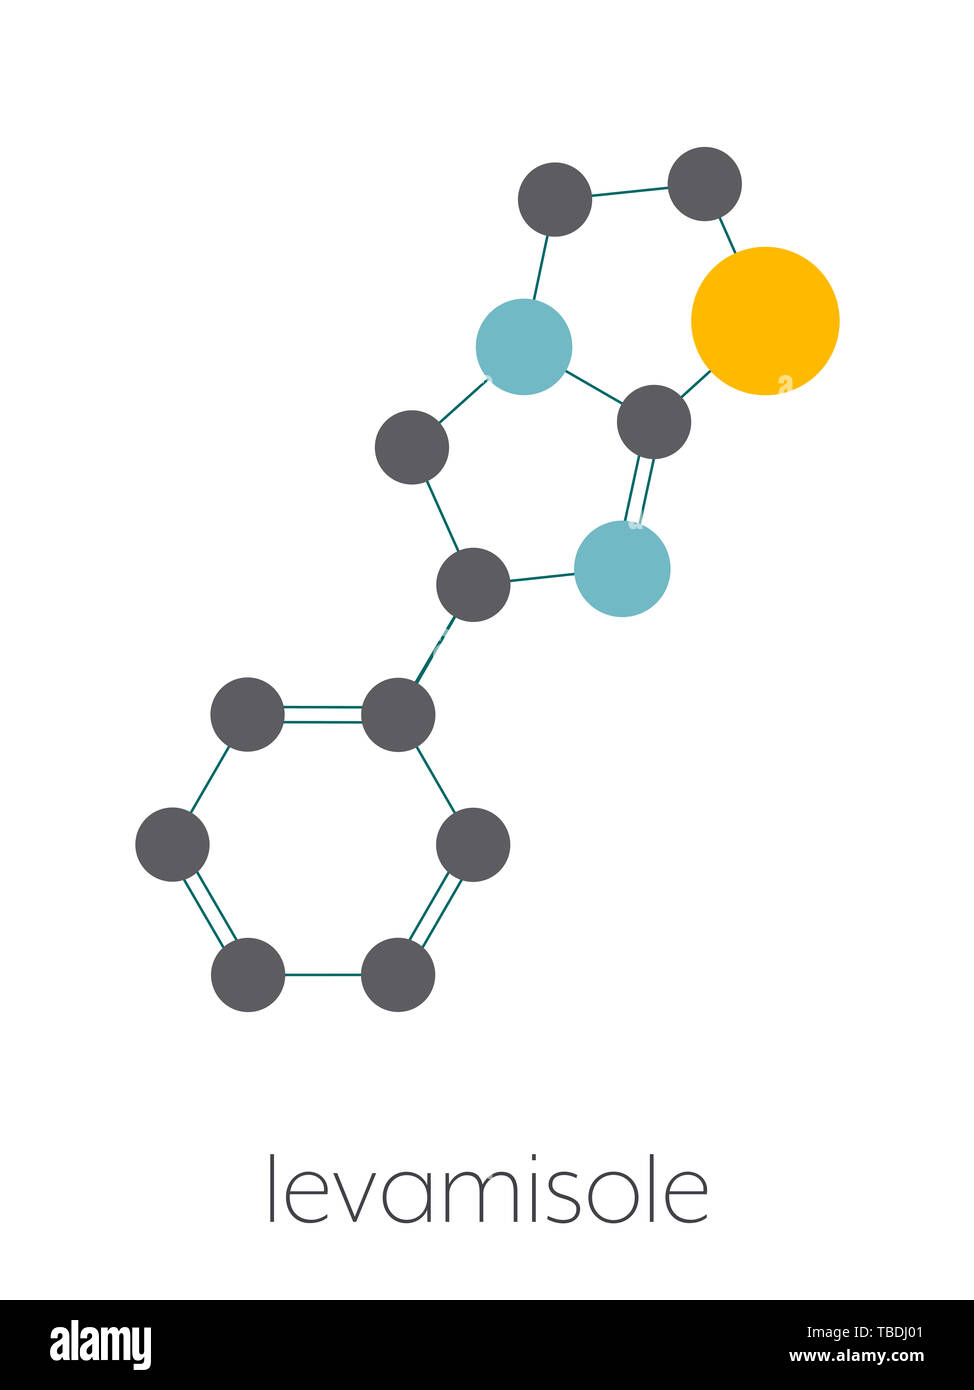 Anthelminthikum levamisol Droge Molekül. Laevorotatory Isomer von tetramisole. Stilisierte Skelett Formel (die chemische Struktur). Atome sind als farbkodierte Kreise, die durch dünne Anleihen verbunden gezeigt, auf einem weißen Hintergrund: Wasserstoff (versteckt), Kohlenstoff (grau), Stickstoff (blau), Schwefel (gelb). Stockfoto